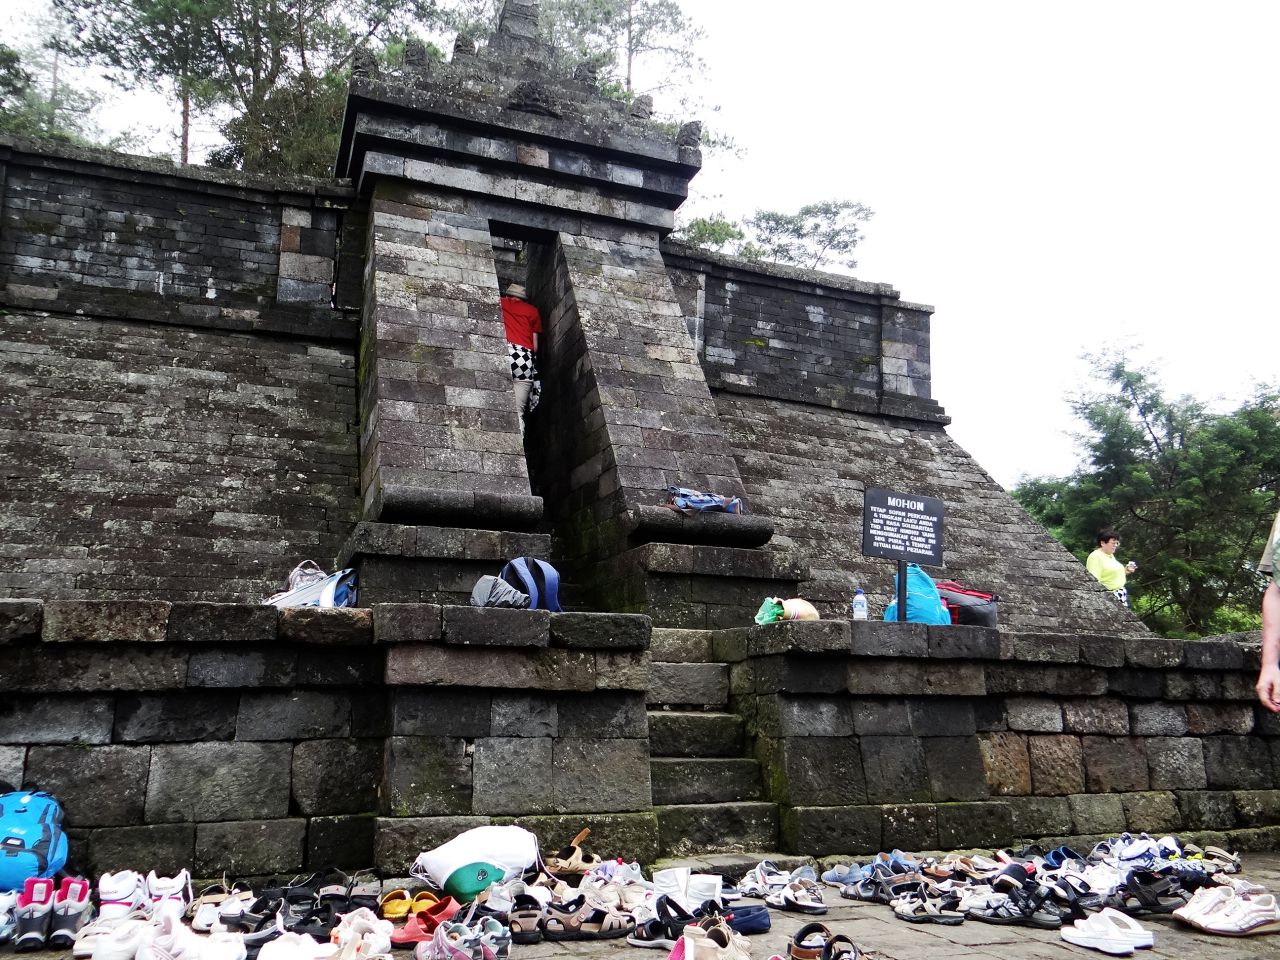 Пирамидальная вершина храма, вход босиком, как видно по количеству нашей обуви:) - Малайзия, Индонезия. Часть 3. Джекьякарта. День второй.